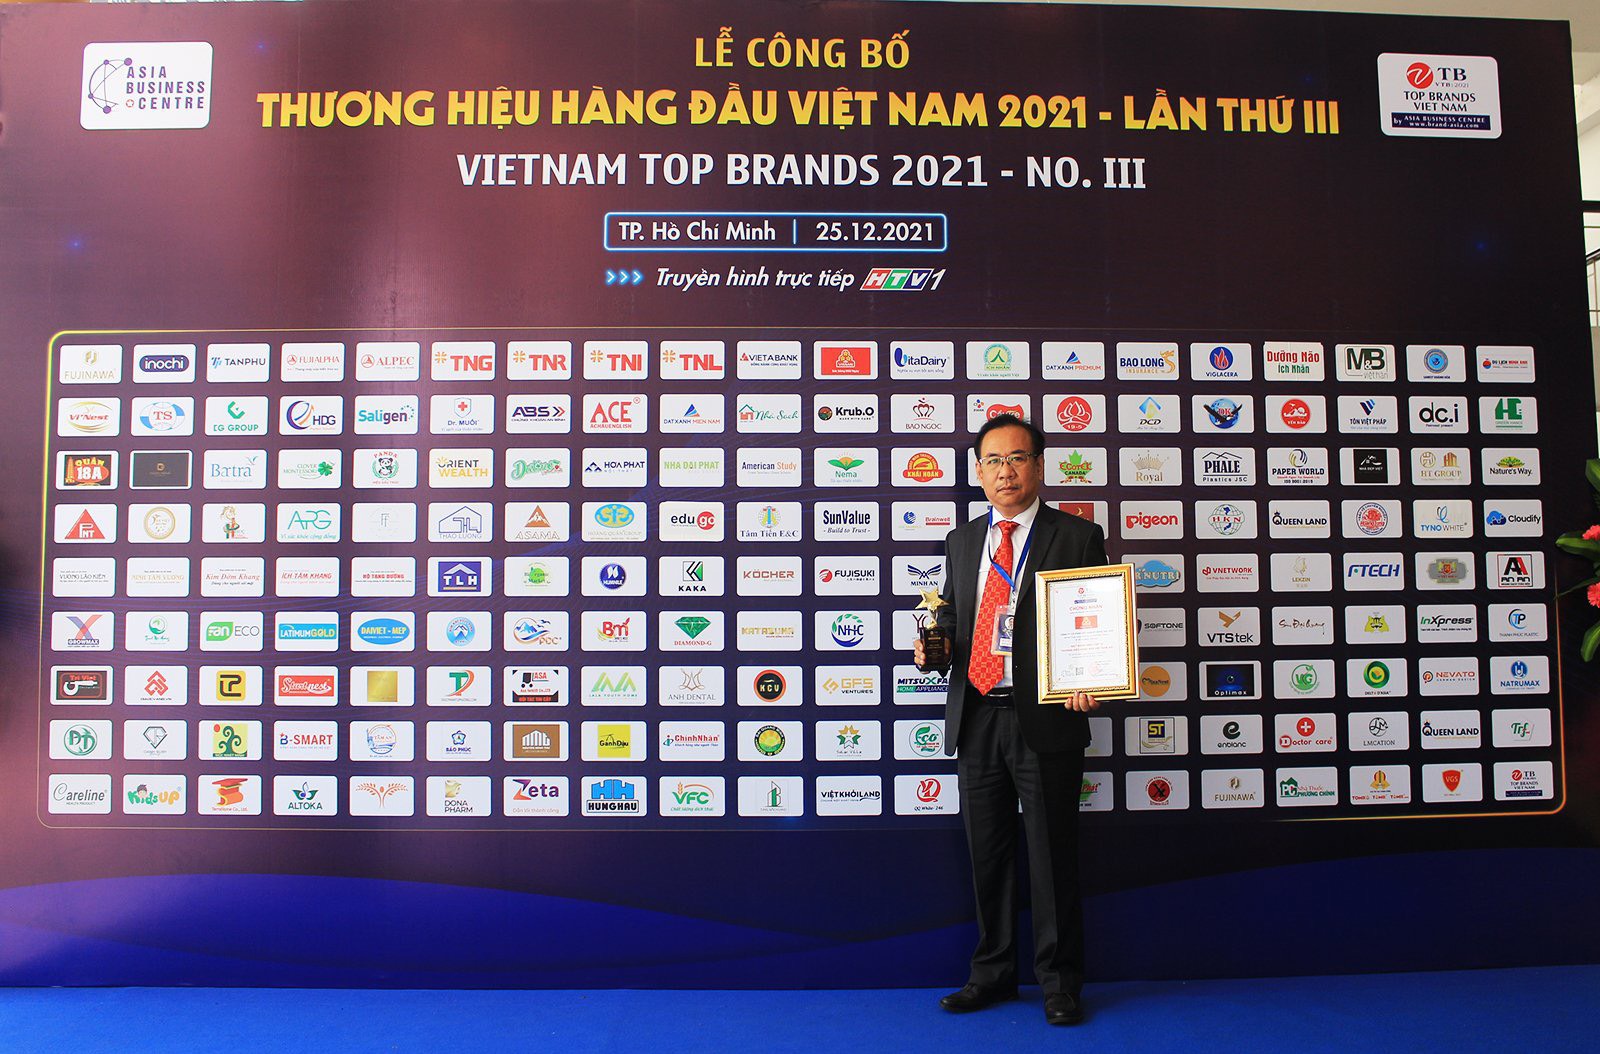 Công ty VISSAN vinh dự đạt danh hiệu “Top 10 Thương Hiệu Hàng Đầu Việt Nam” cùng danh hiệu “Nhà lãnh đạo tiêu biểu Việt Nam năm 2021” được trao tặng cho ông Nguyễn Ngọc An - Tổng Giám đốc Công ty VISSAN.